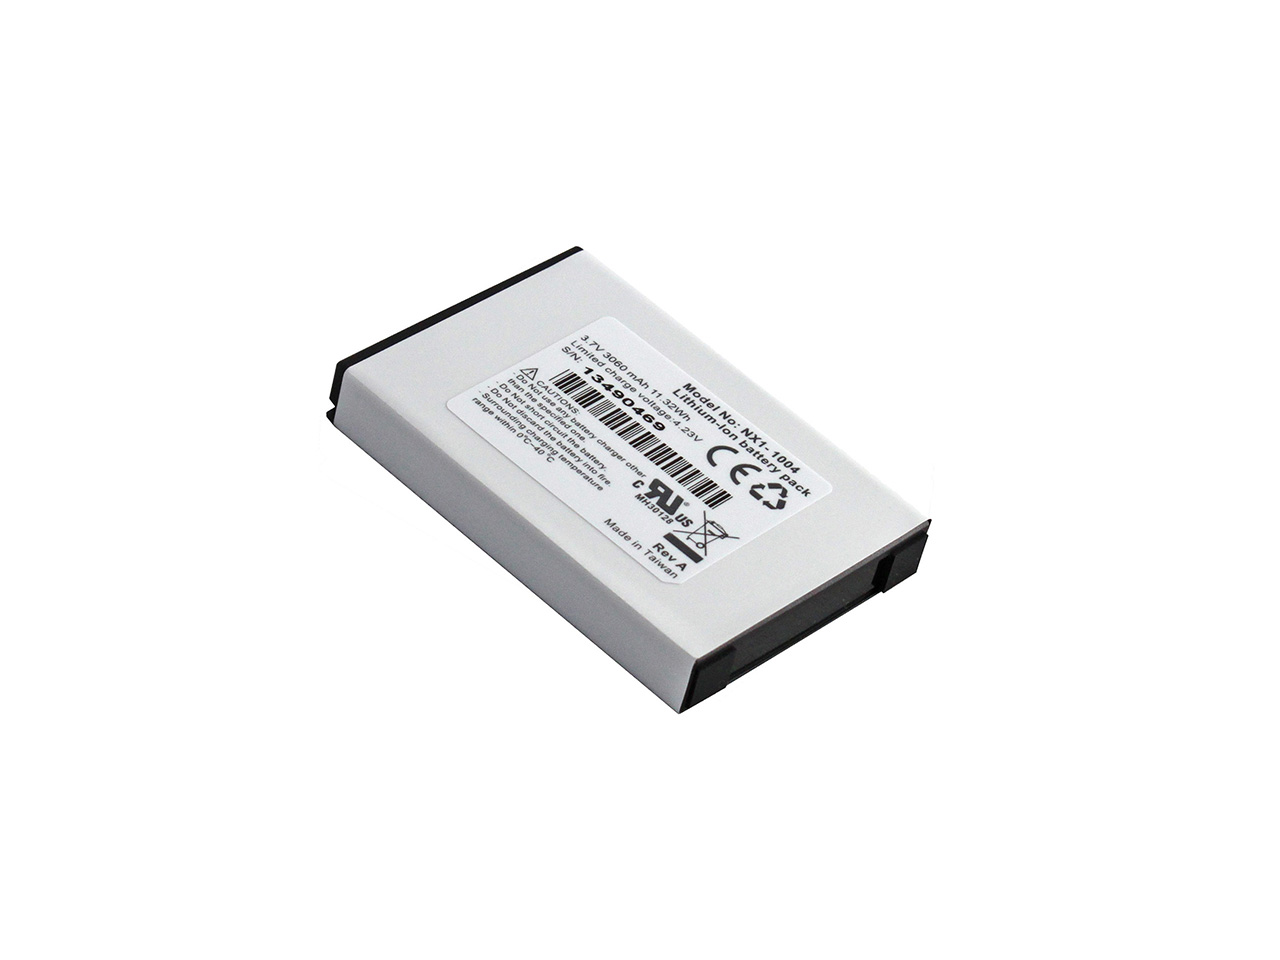 NX1-1004-Extended-Battery (2).jpg